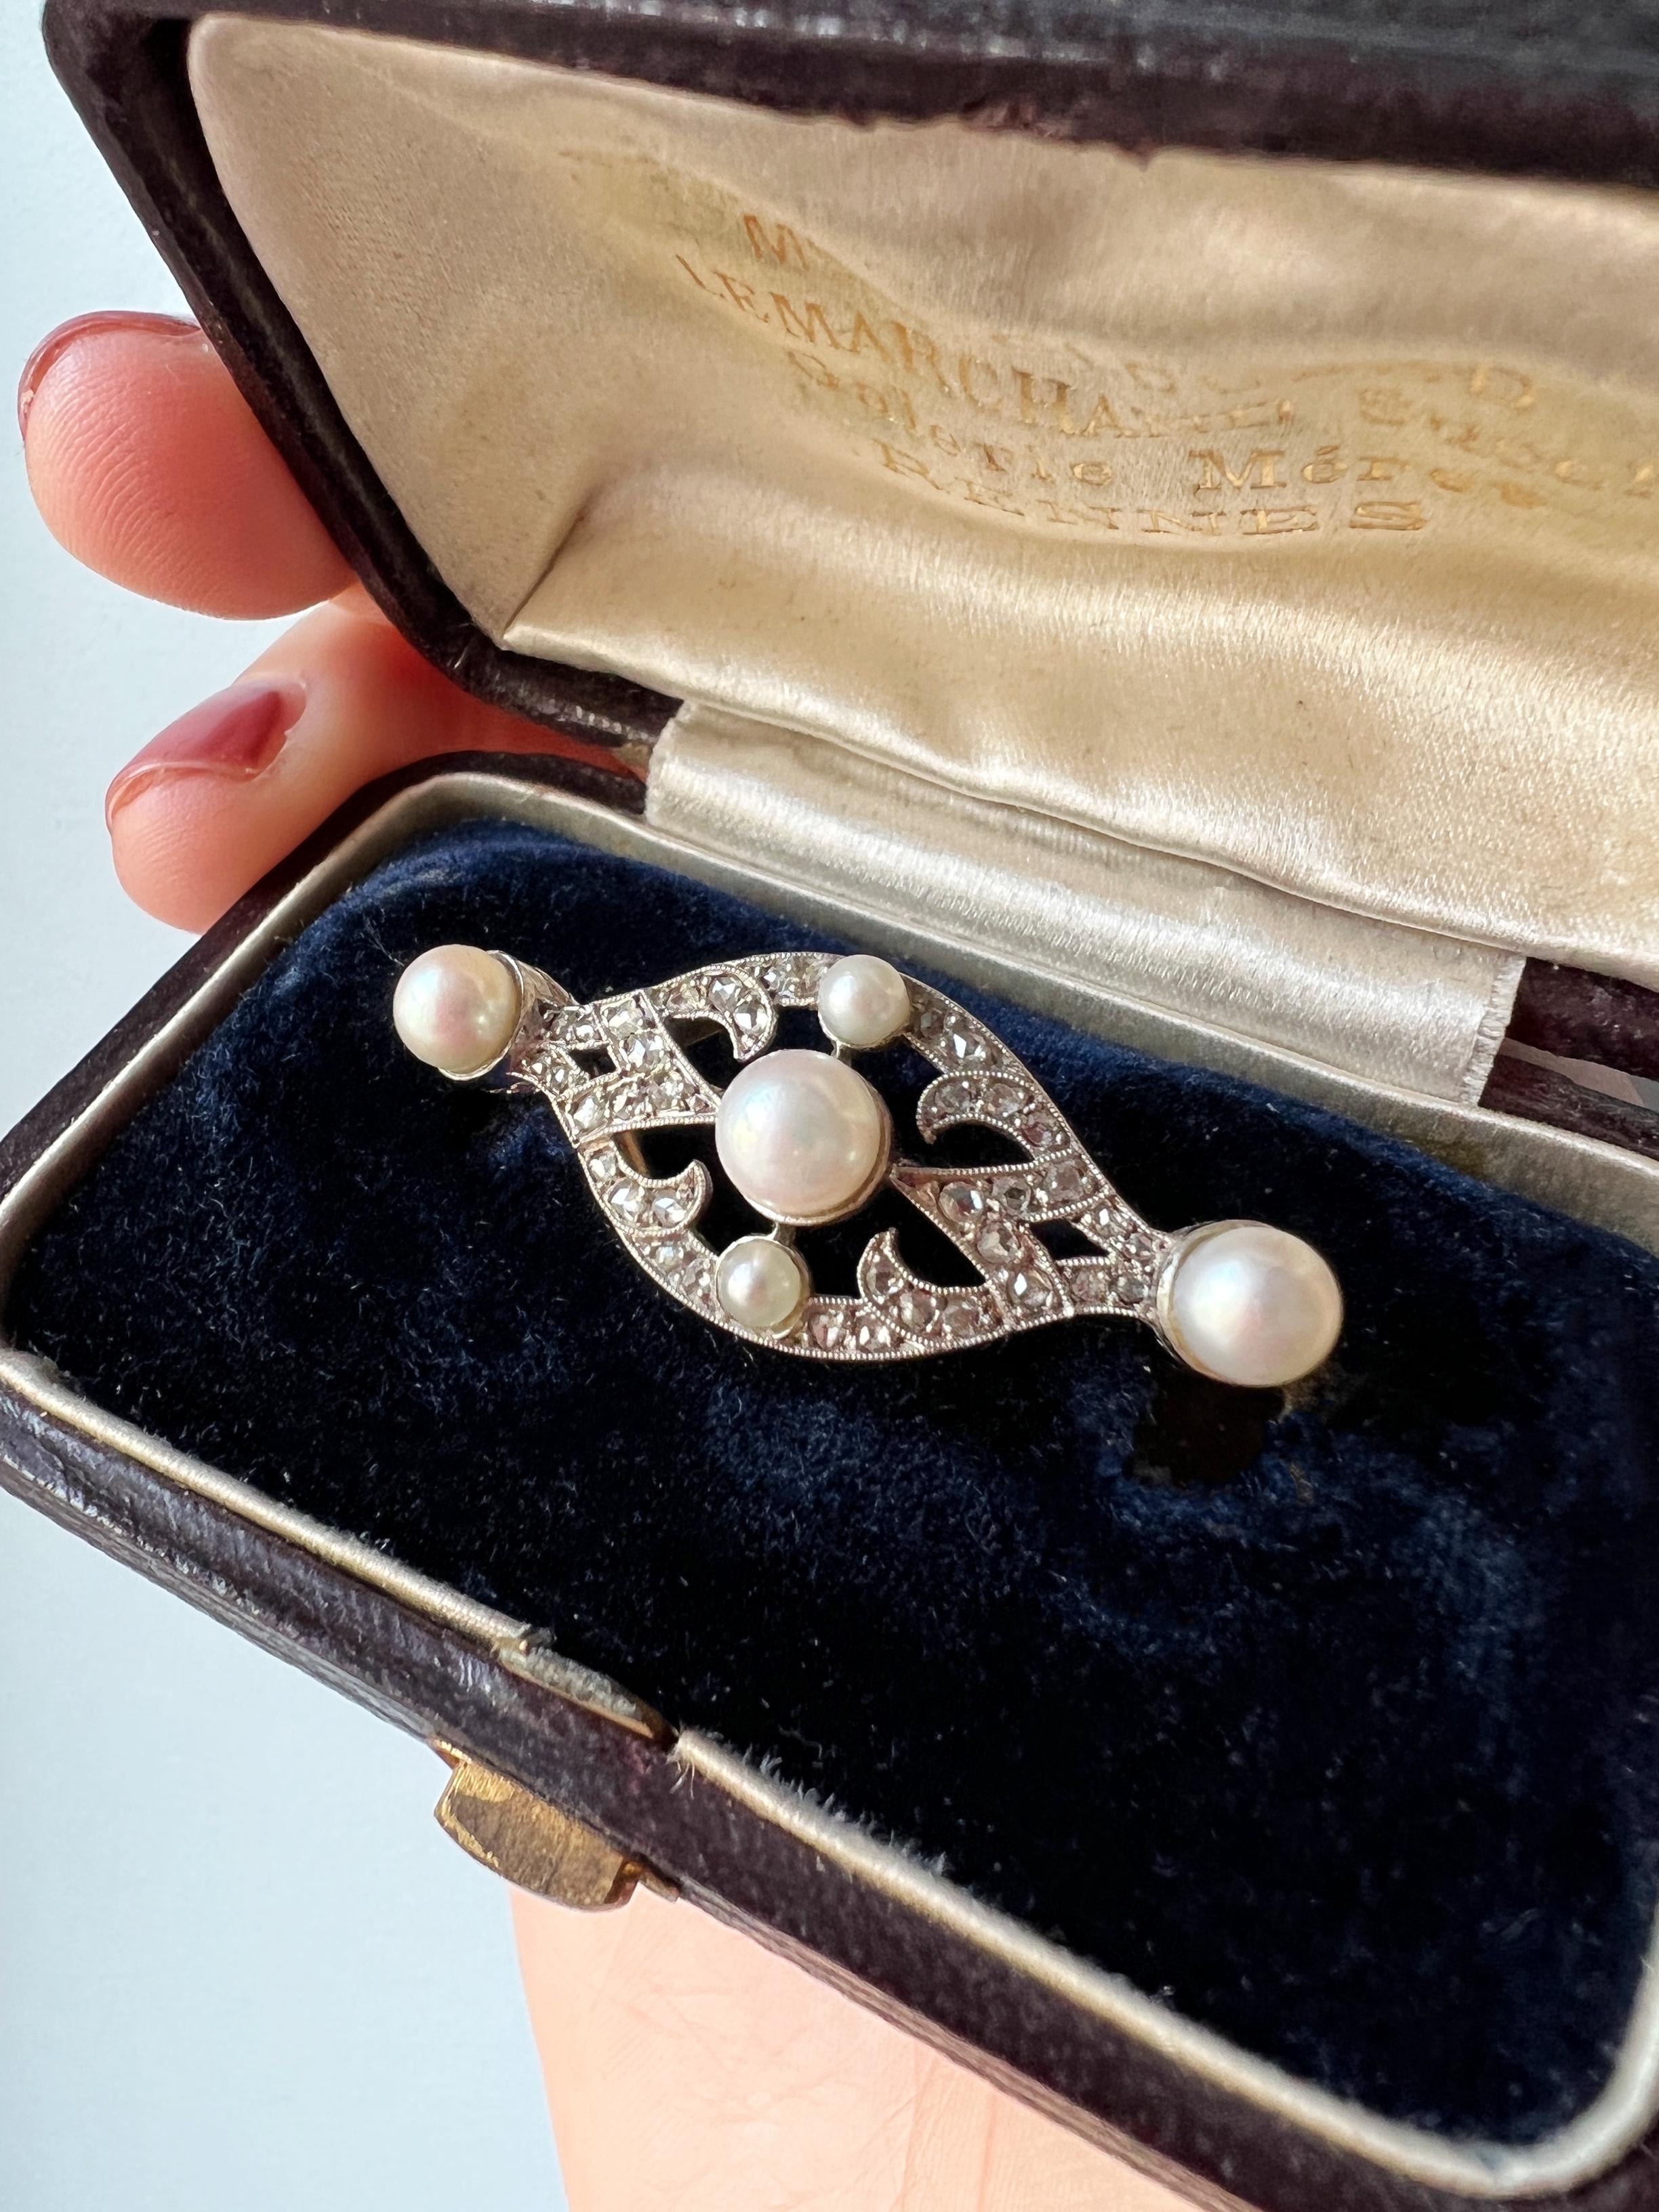 Diamanten und Perlen sind eine zeitlos klassische Kombination für Weihnachten. Die beiden Edelsteine ergänzen sich perfekt, wobei die Perlen den Glanz der Diamanten abmildern. Zum Verkauf steht eine raffinierte und sehr elegante Brosche aus der Zeit